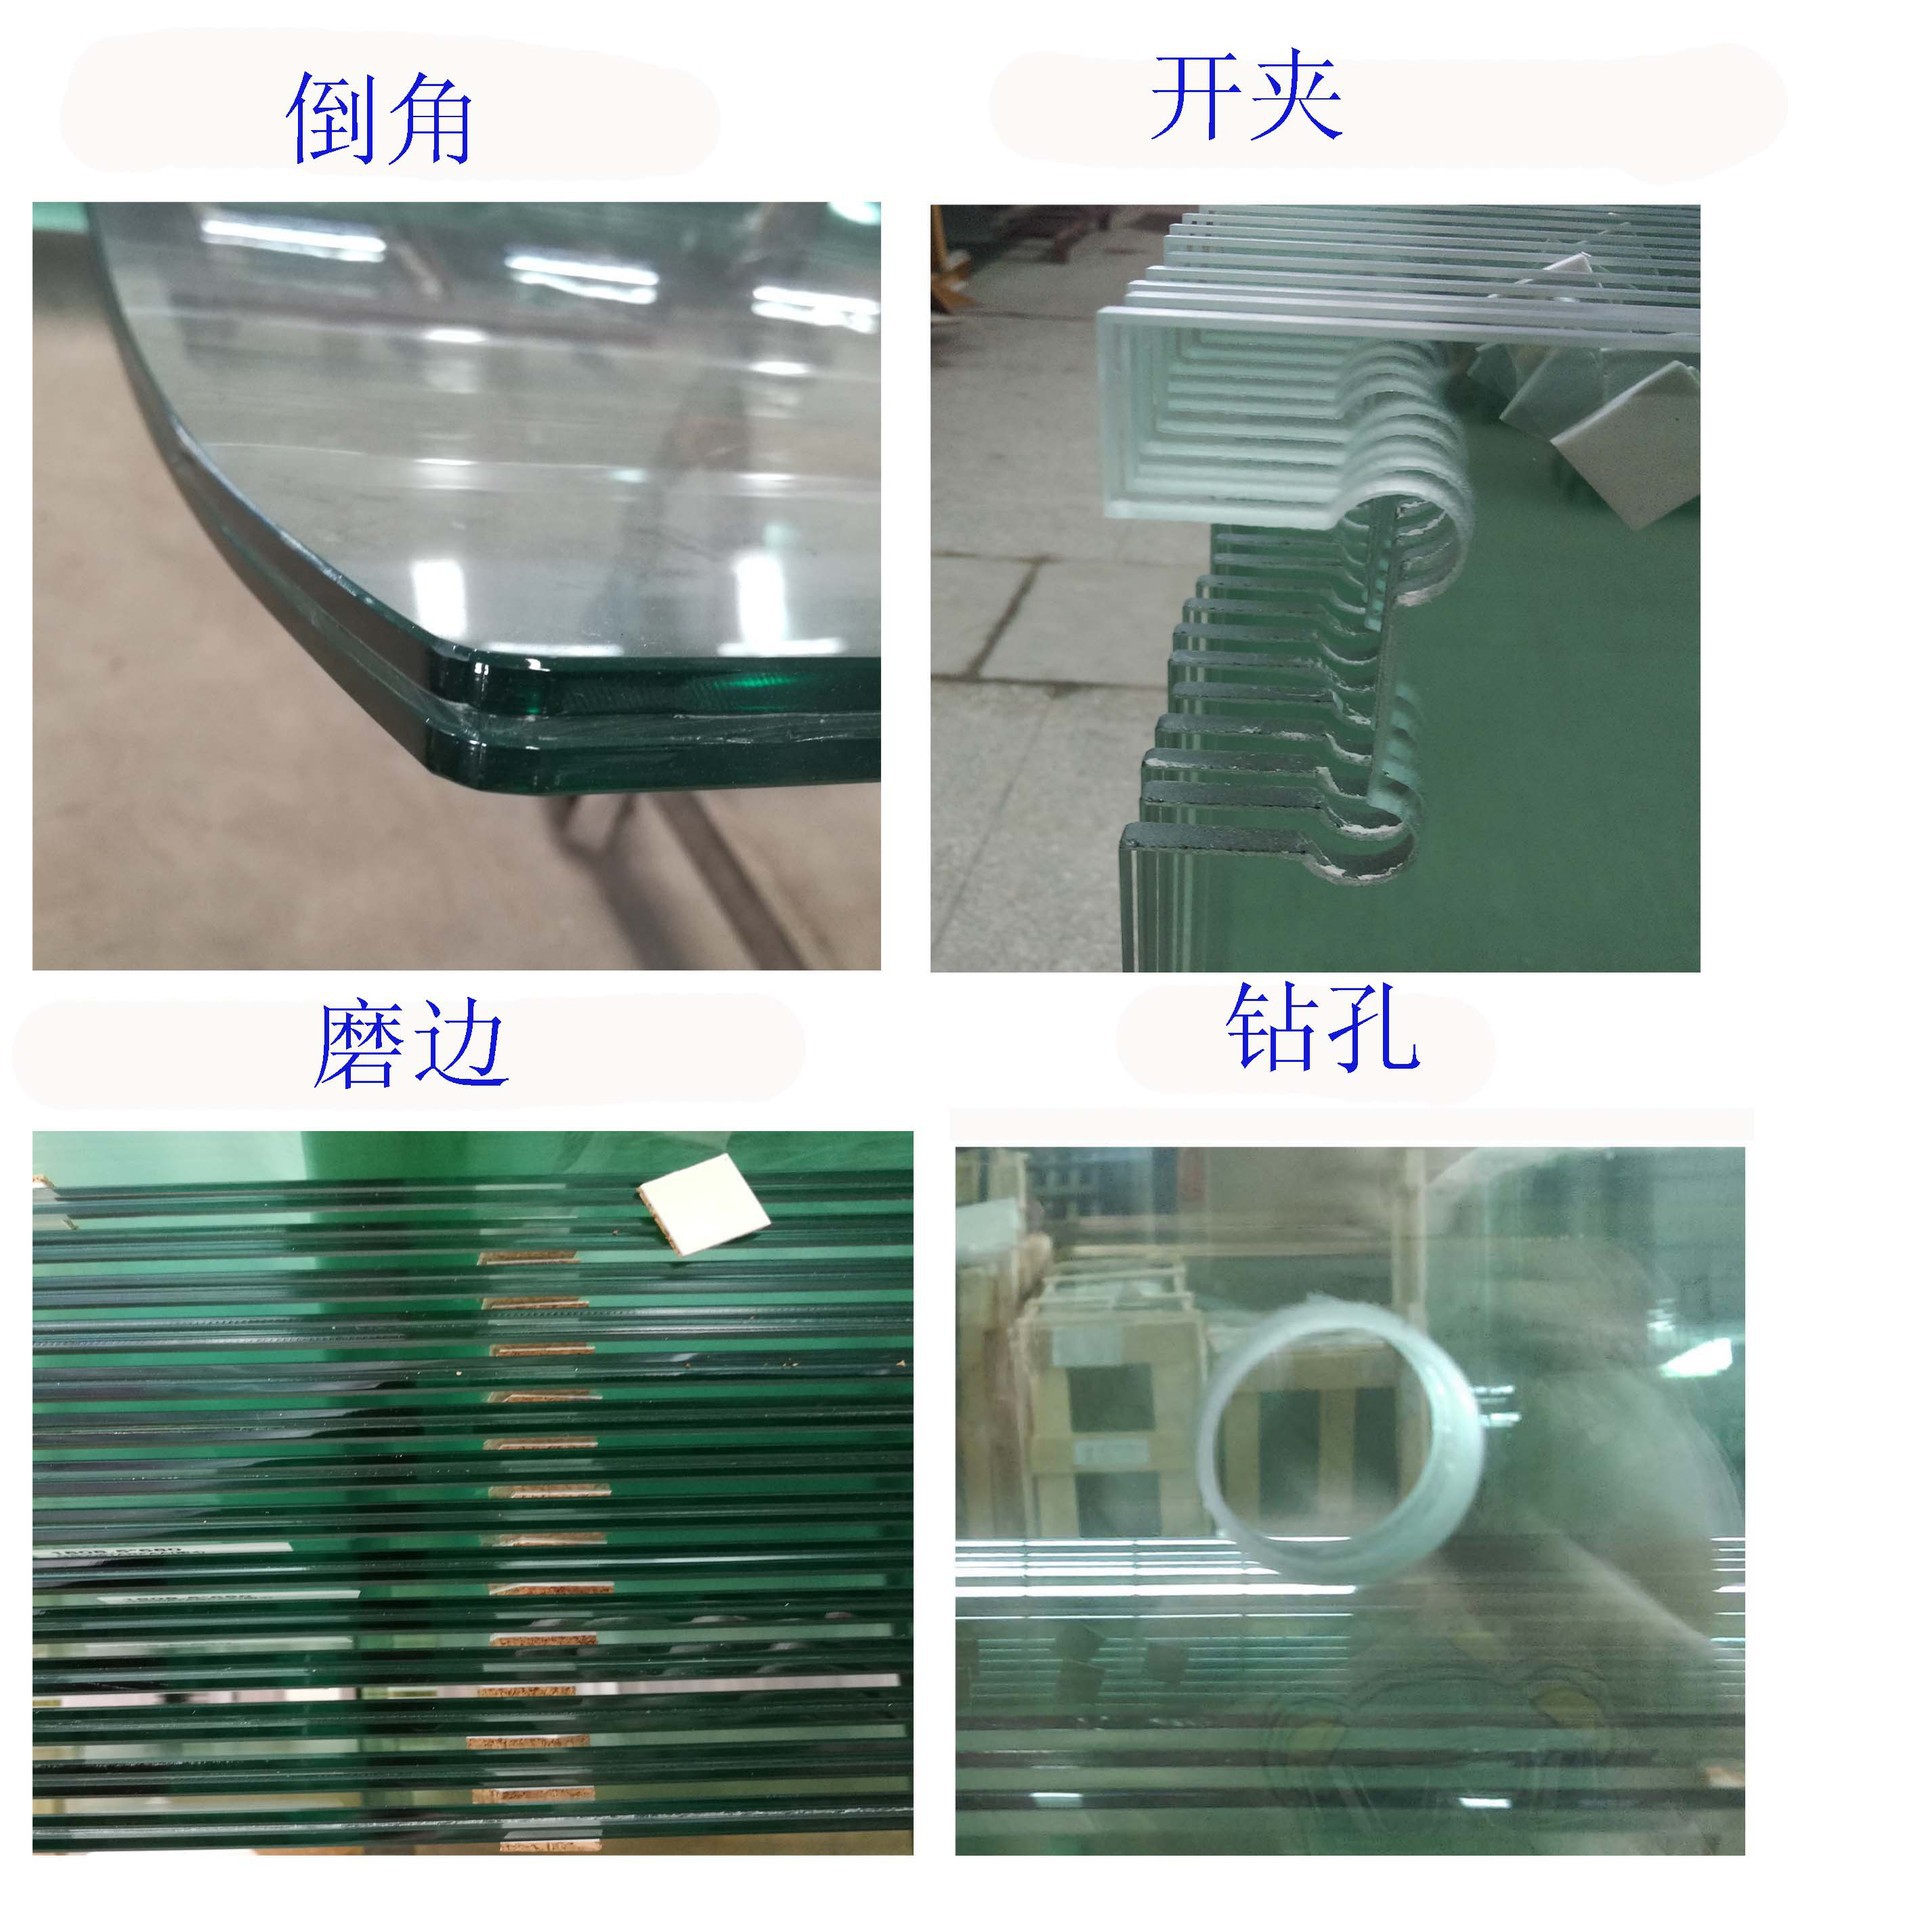 厂家直销茶几餐桌磨砂钢化玻璃定制定做面板台面夹胶钢化玻璃示例图15